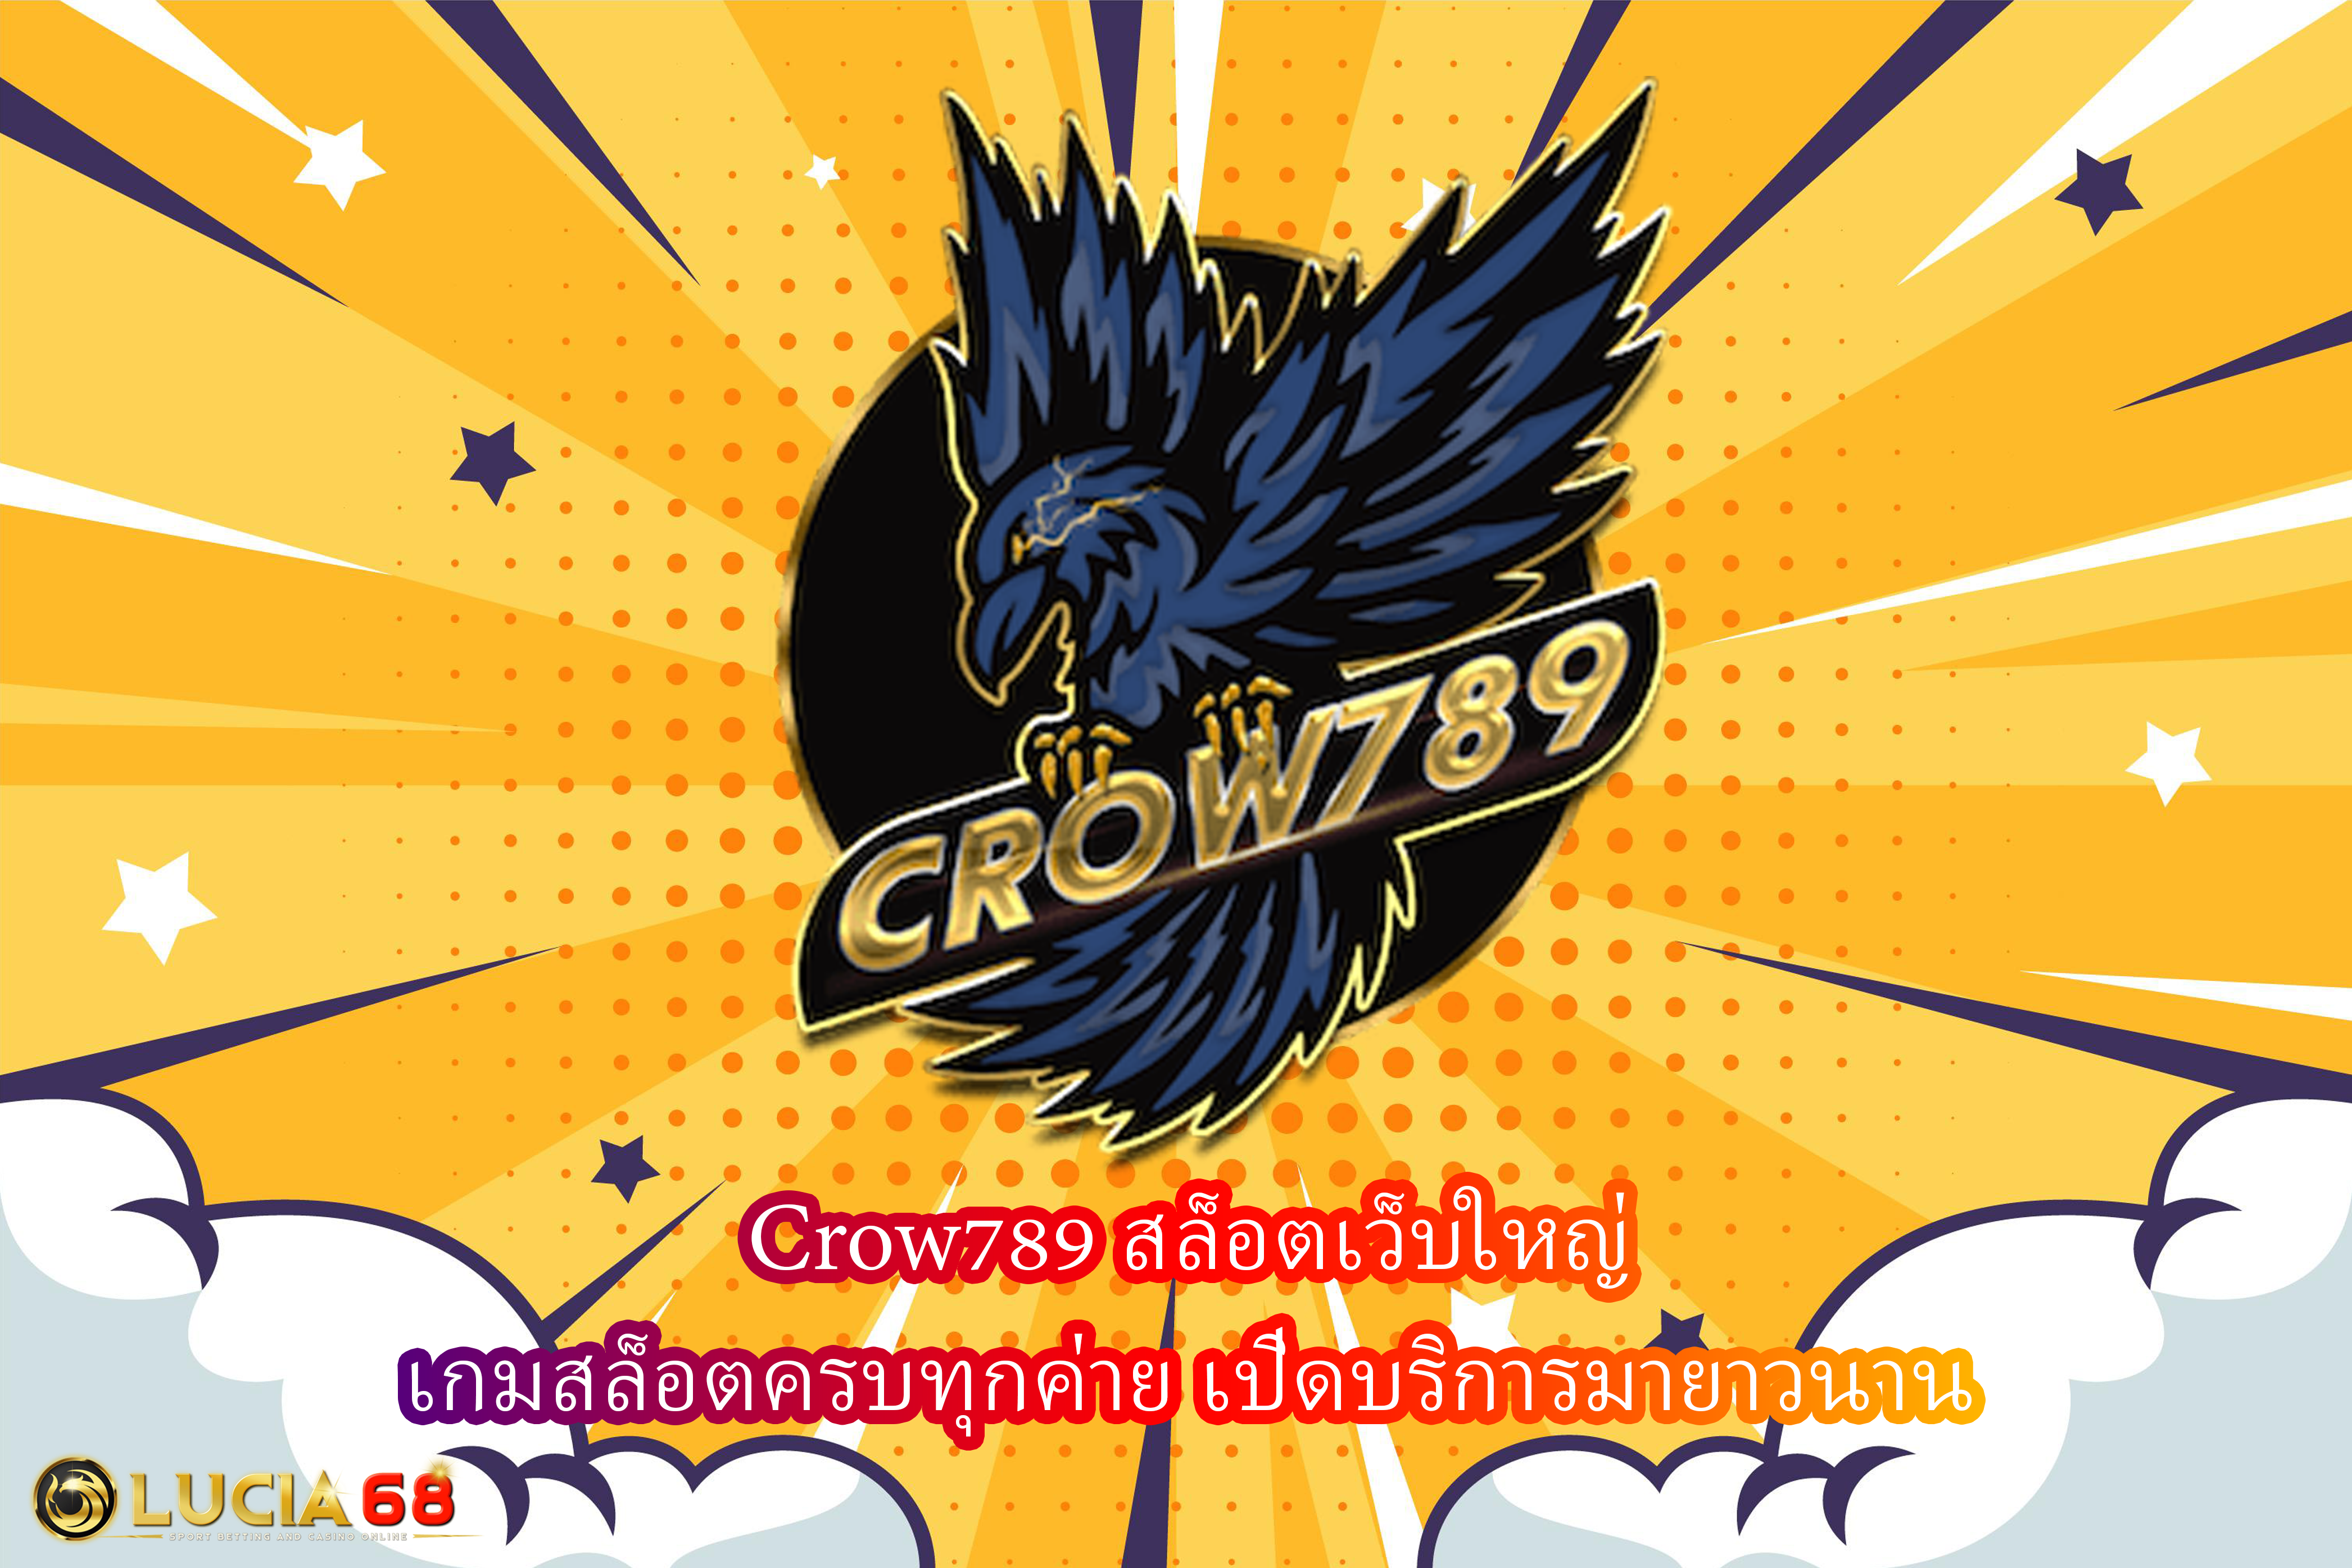 Crow789 สล็อตเว็บใหญ่ เกมสล็อตครบทุกค่าย เปิดบริการมายาวนาน